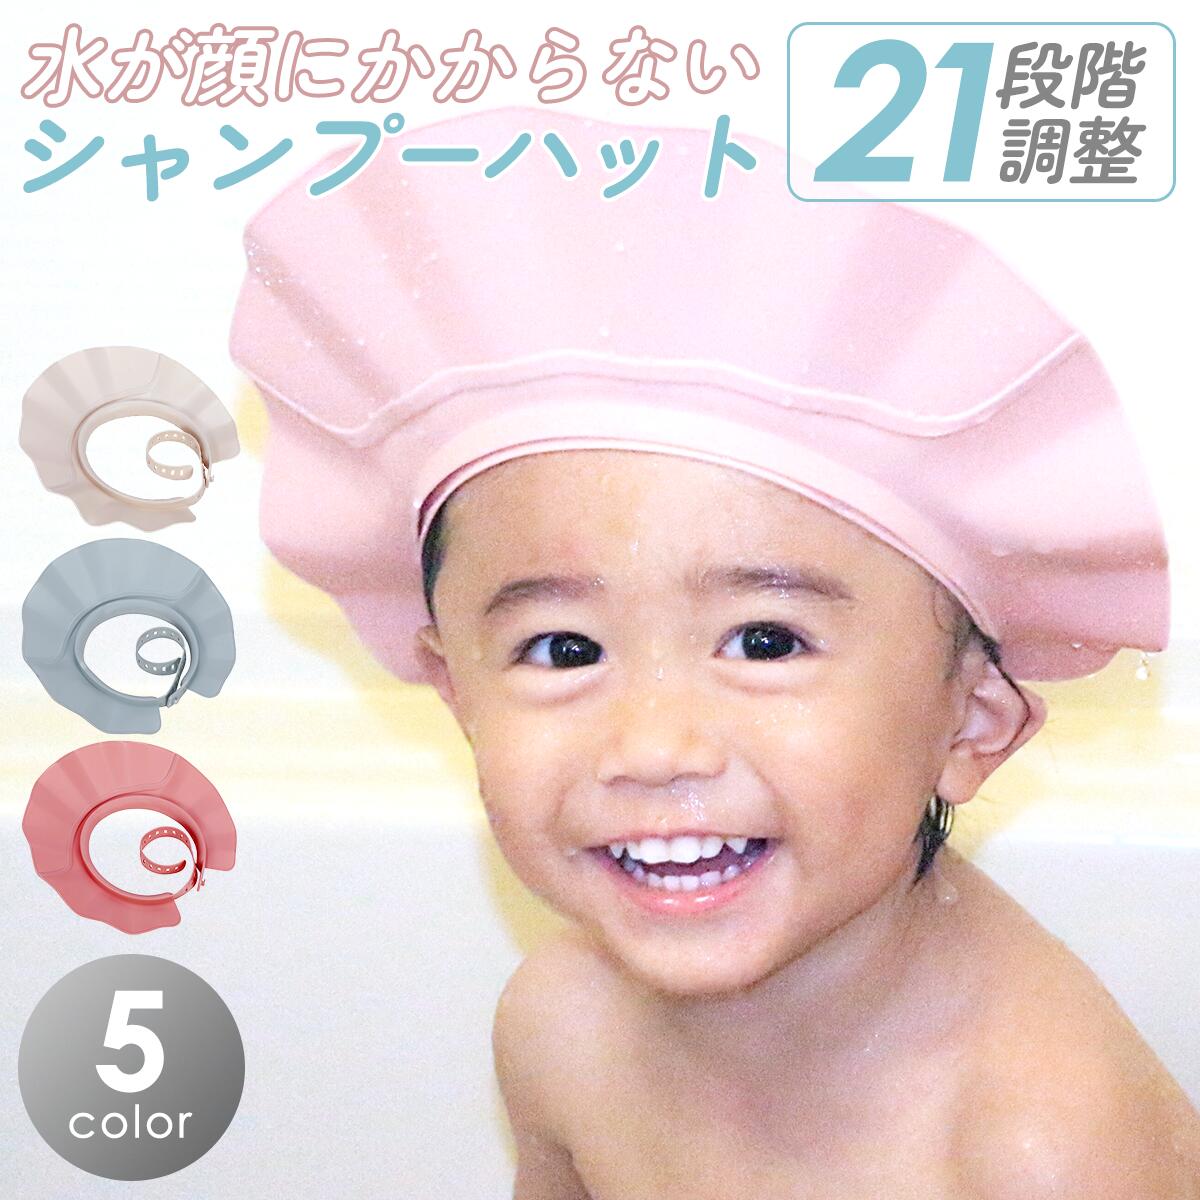 シャンプーハット 子供 大人 21段階 調整可能 シャンプーキャップ 介護 赤ちゃん 幼児 洗髪用 シャンプー用 お風呂グ…